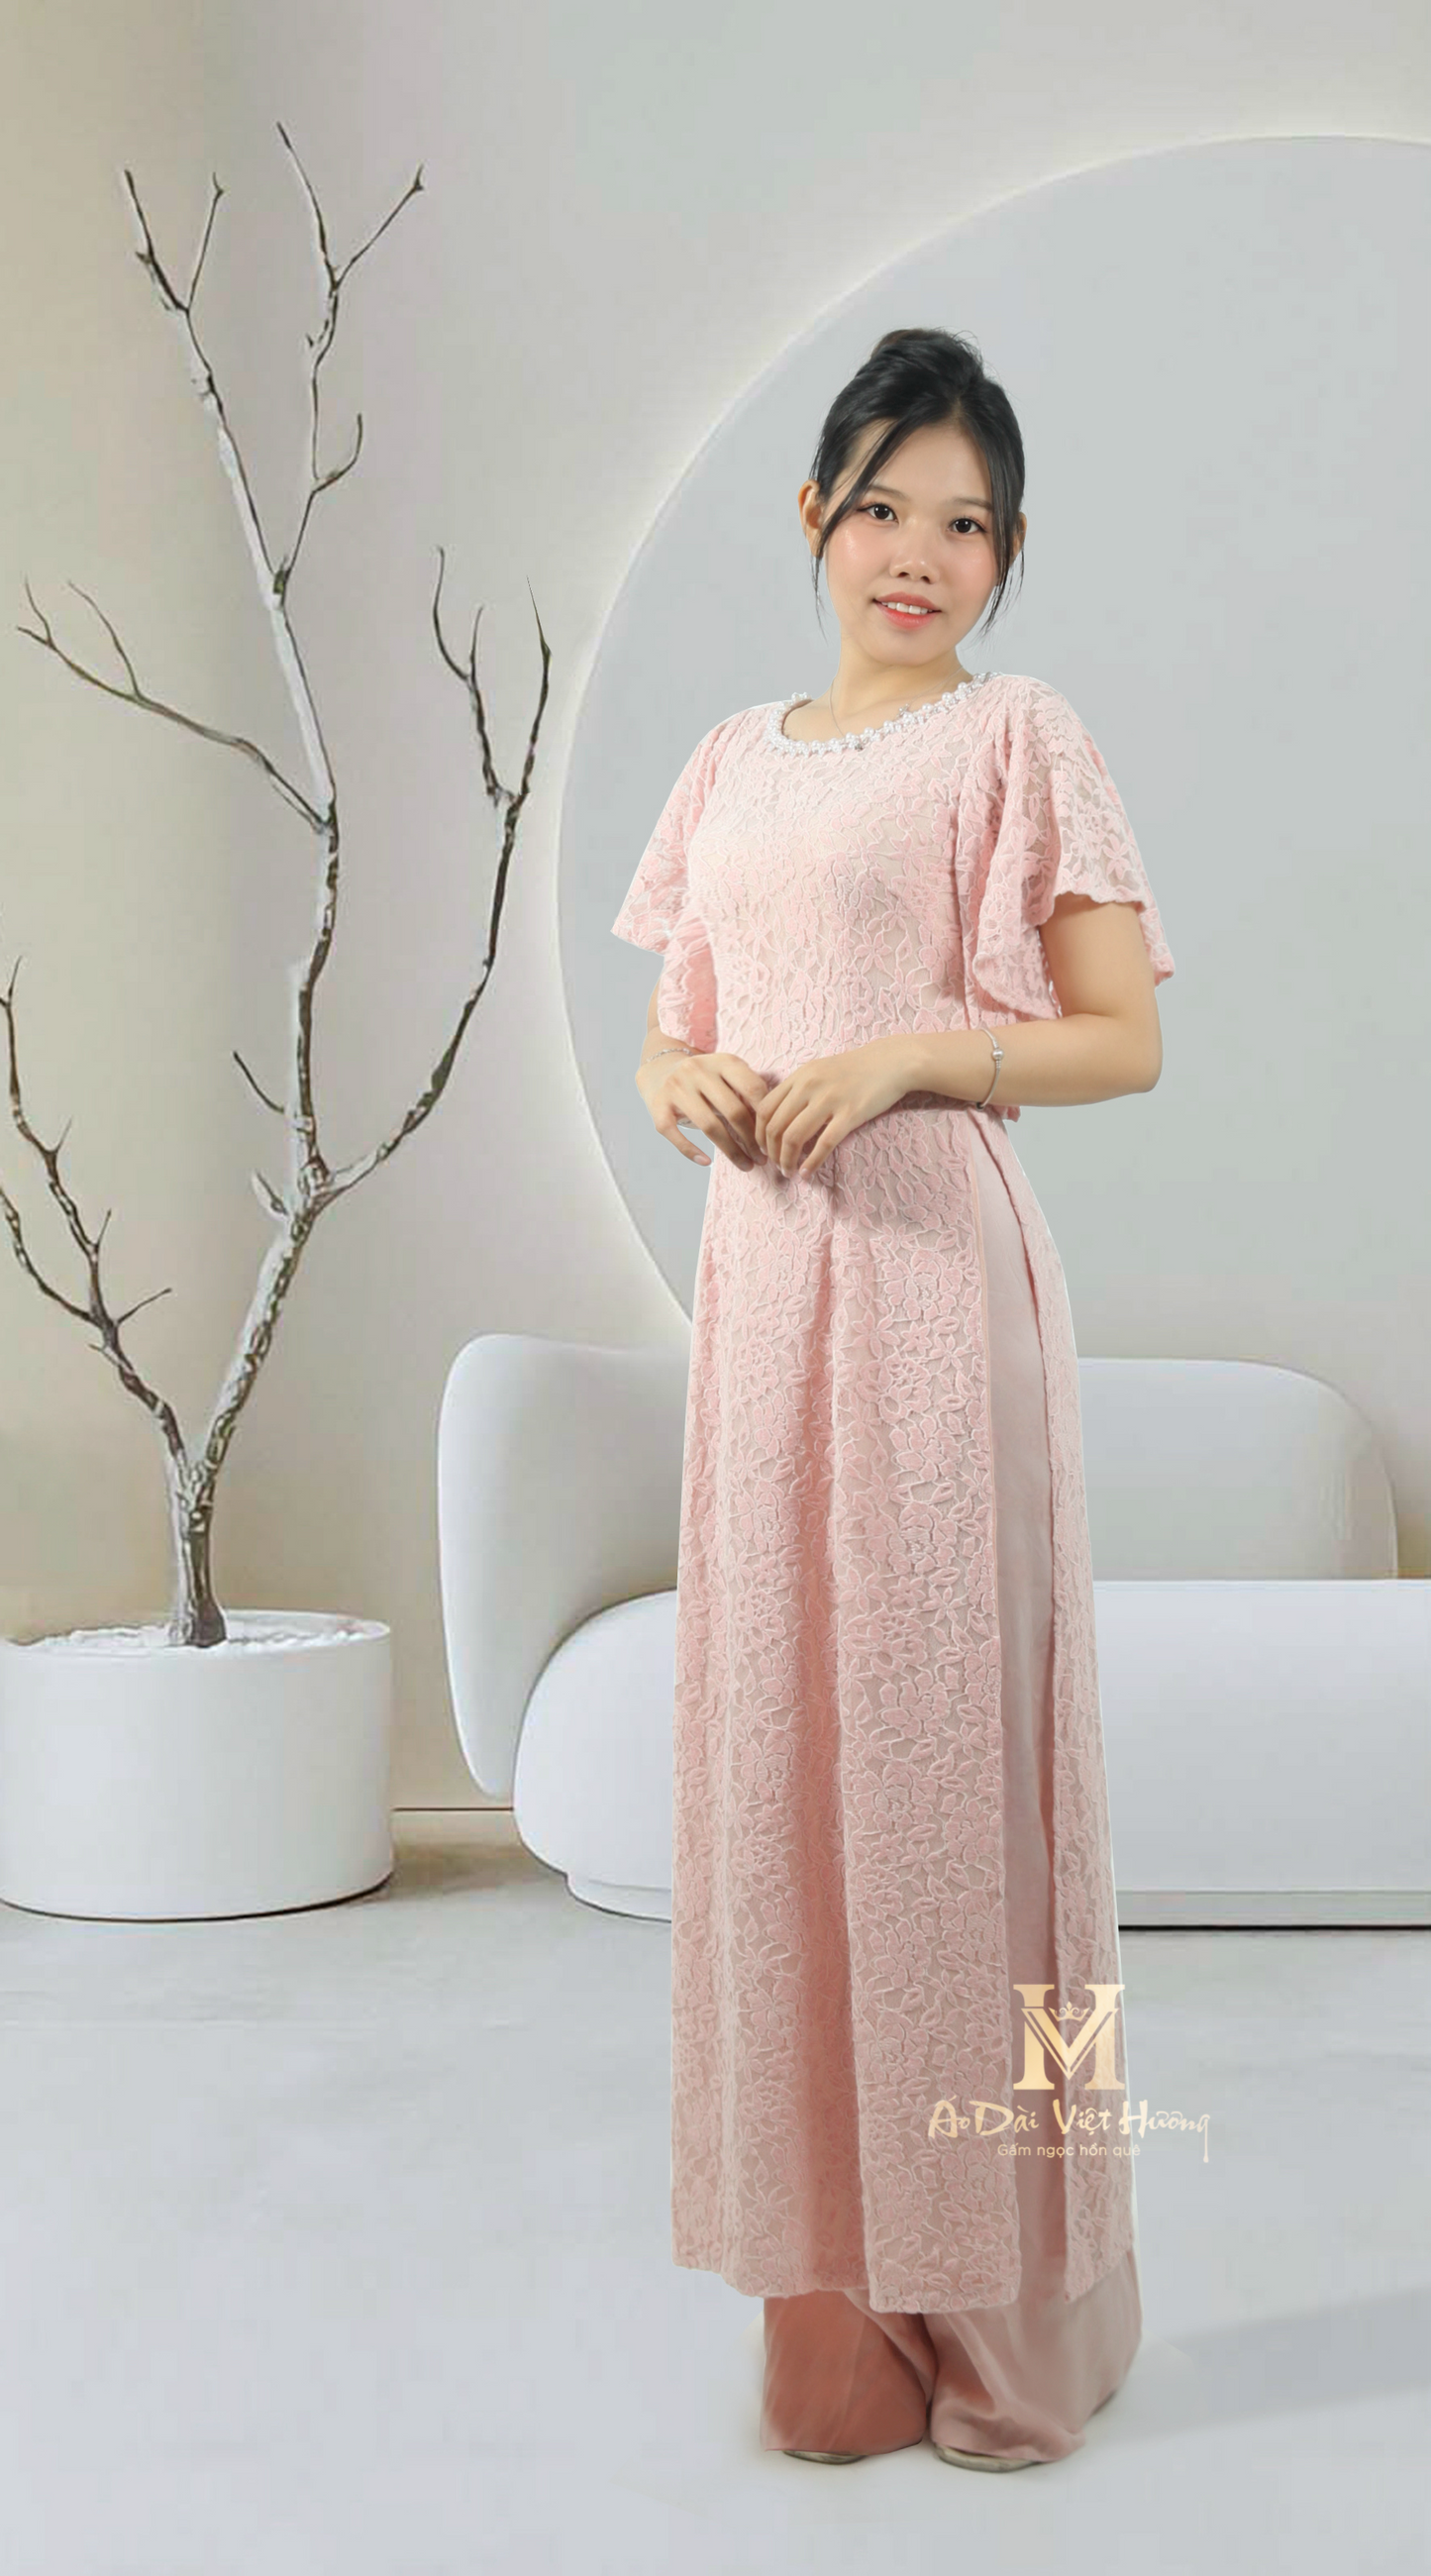 233 - Velvet Lace Fabric Pink Set Ao Dai with Pants (Bộ Áo Dài Nhung Ren Hồng Kèm Quần)